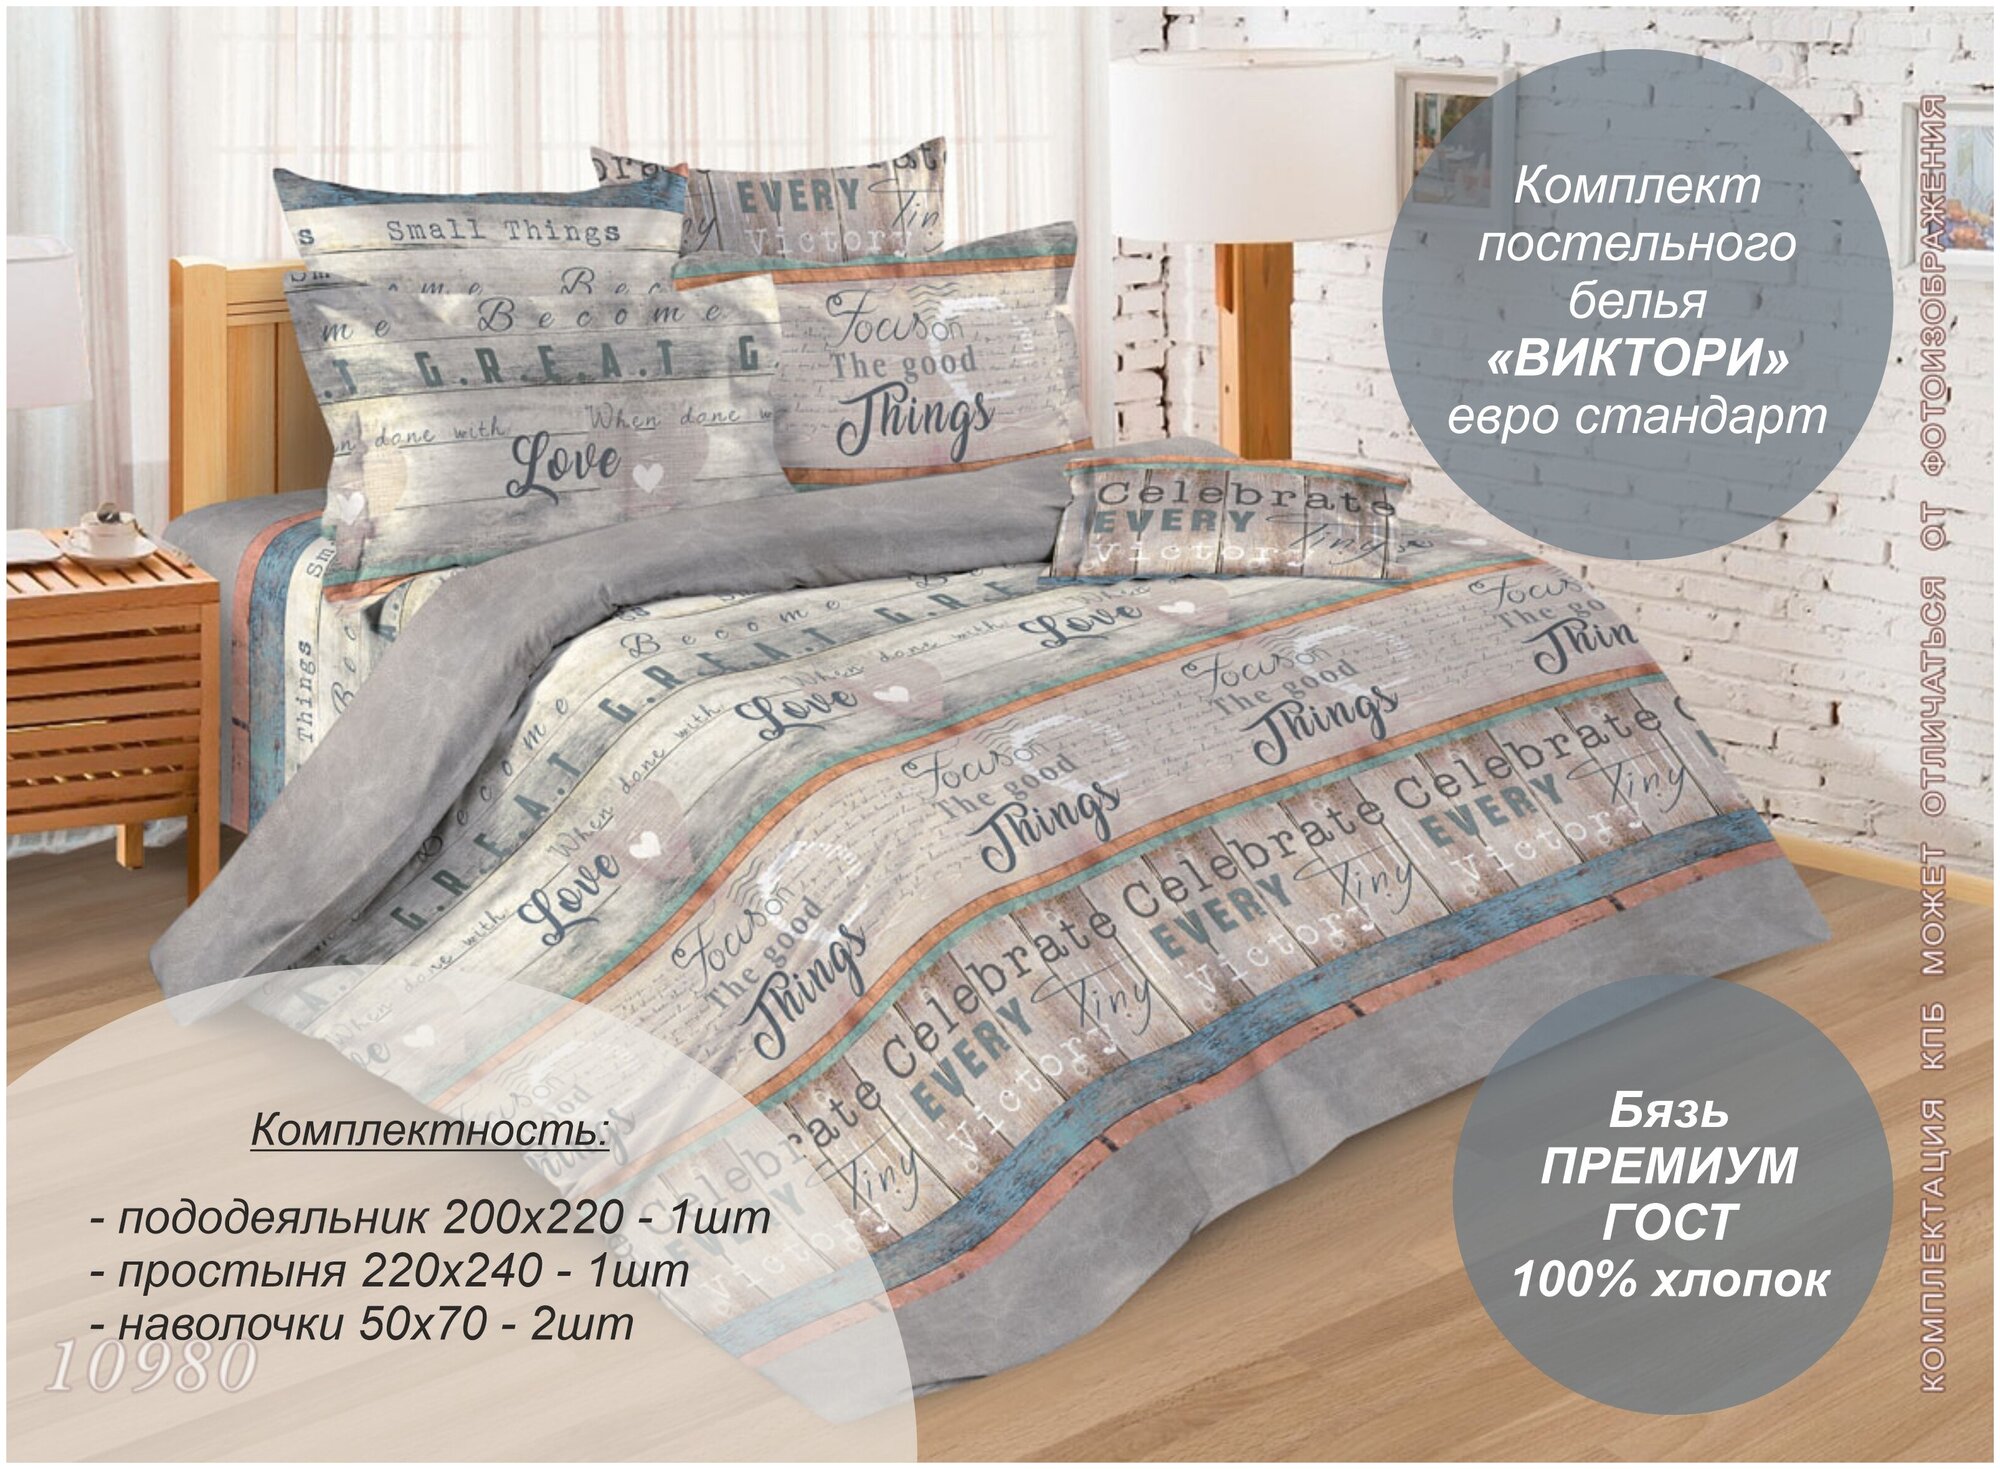 Комплект постельного белья "Виктори" евро стандарт (бязь Премиум ГОСТ, 100% хлопок)